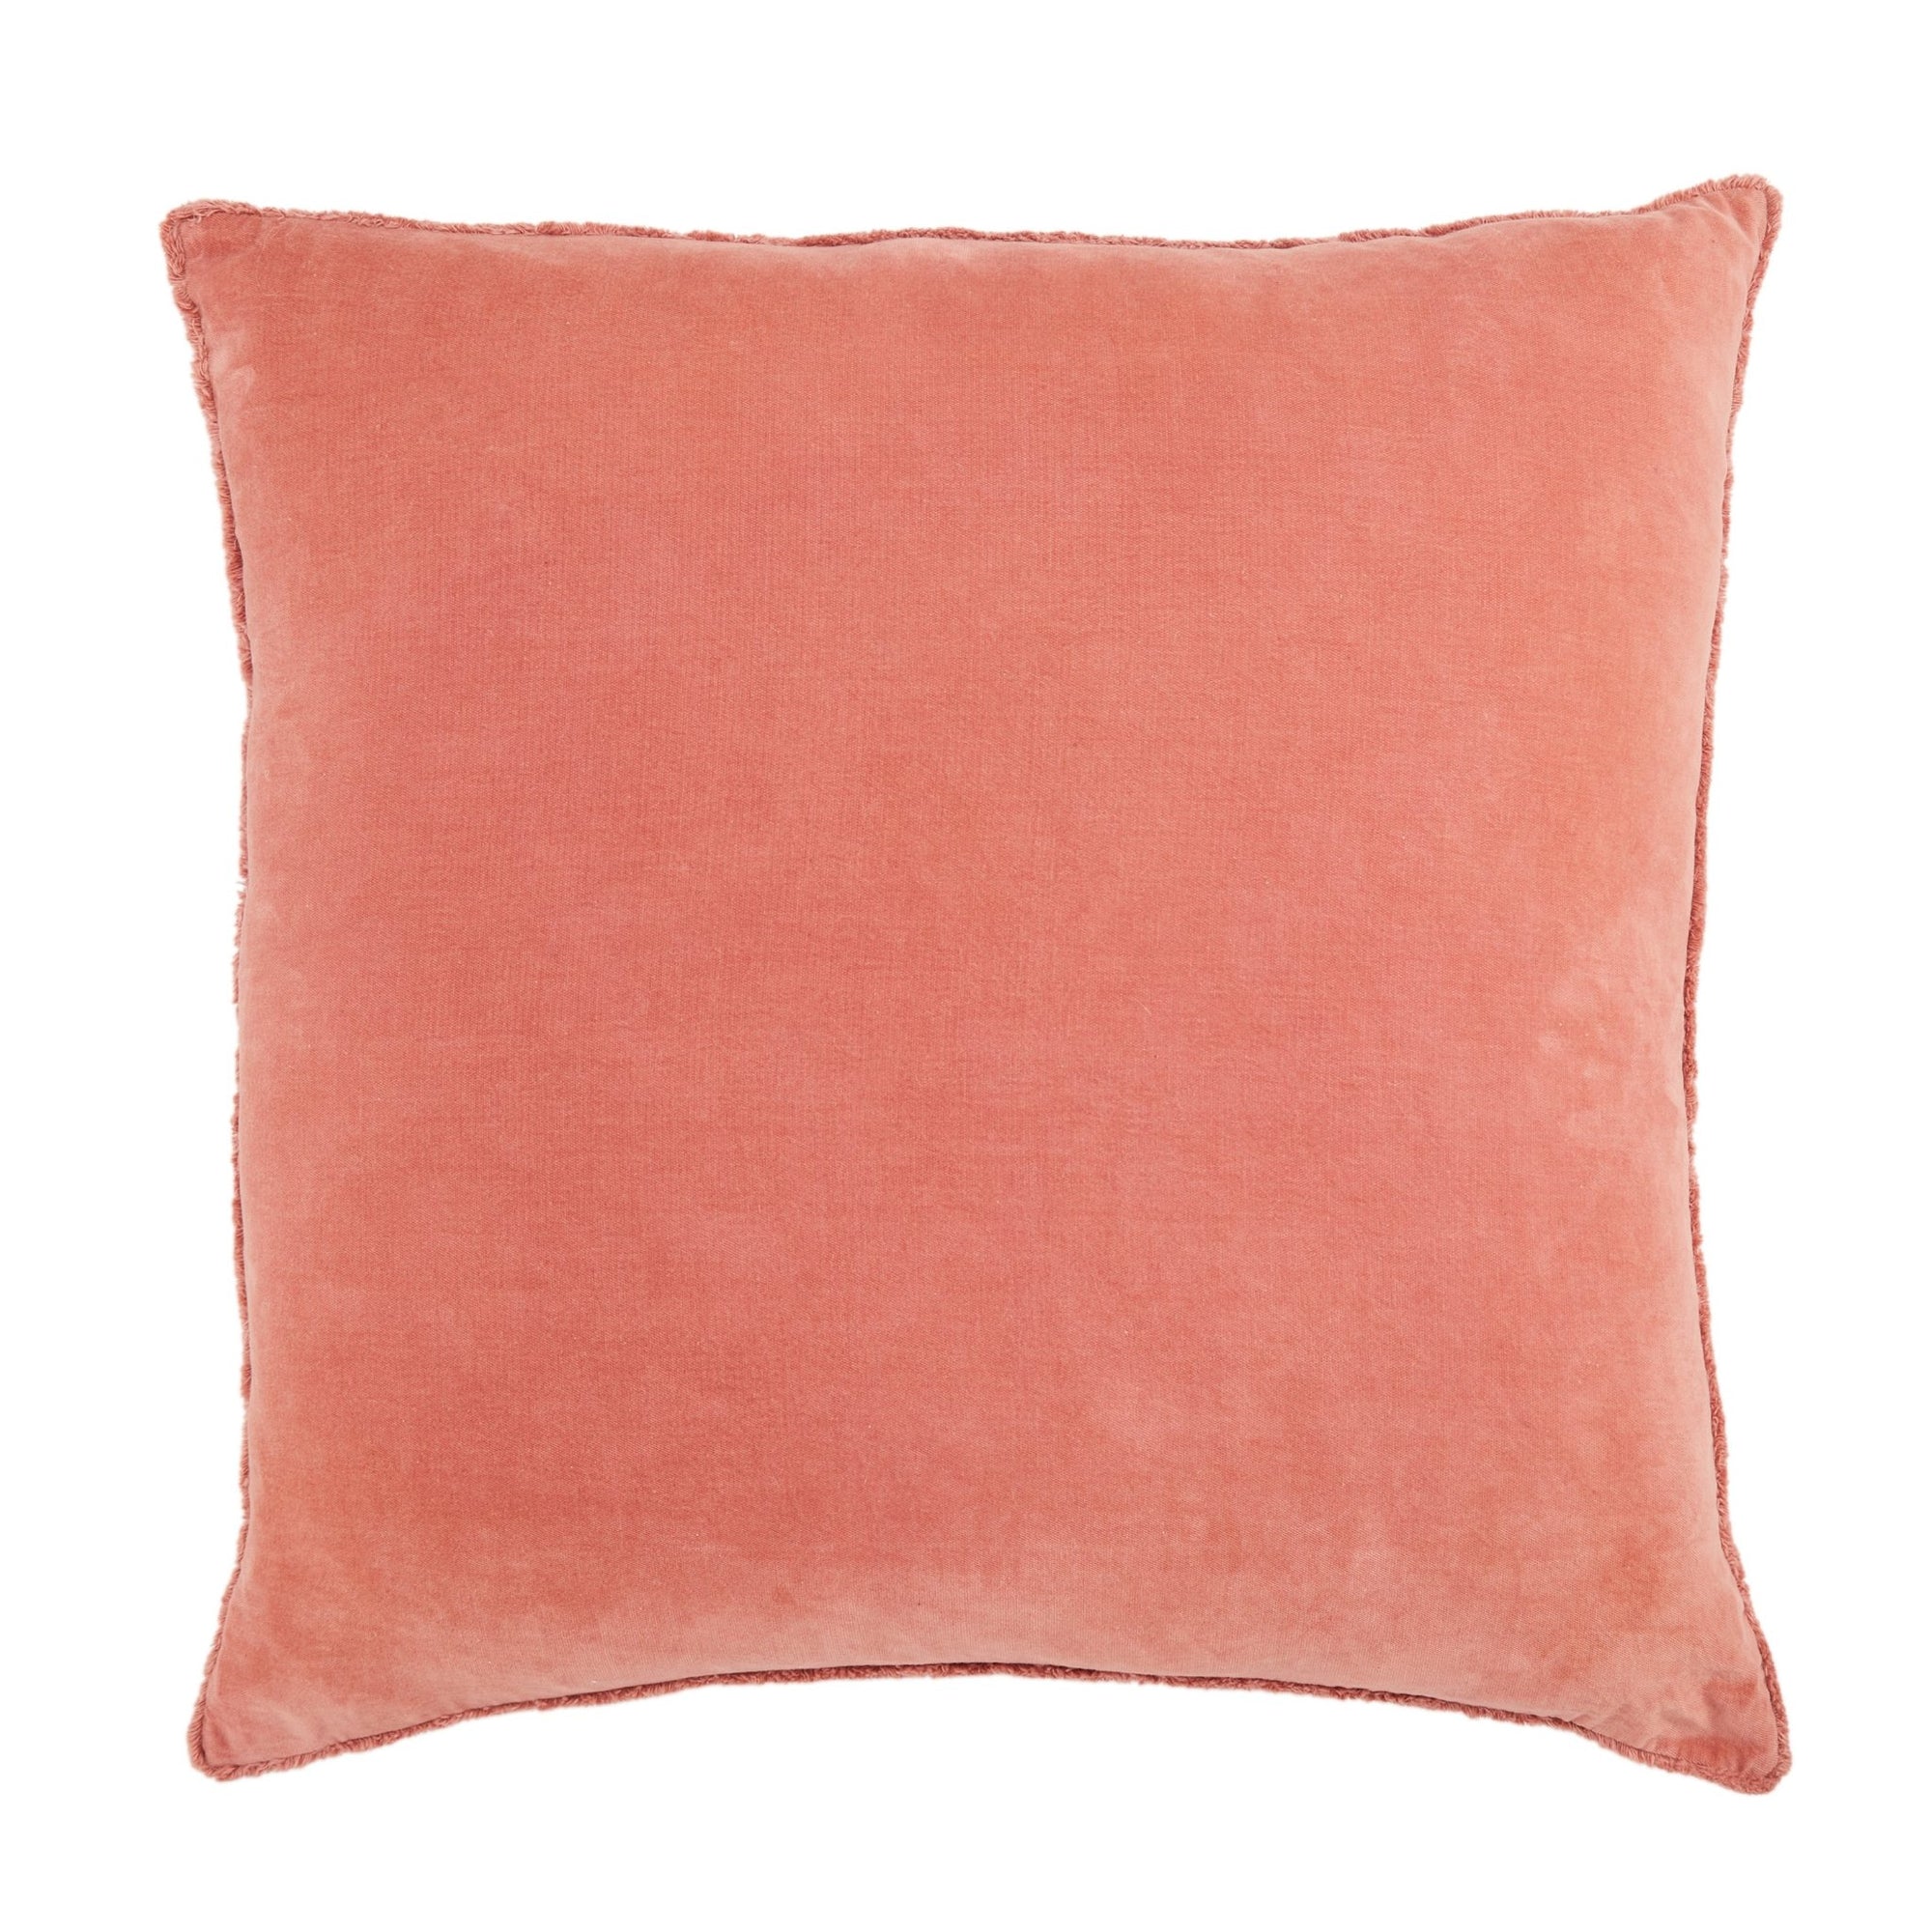 Nouveau Nou19 Sunbury Pink Pillow - Rug & Home